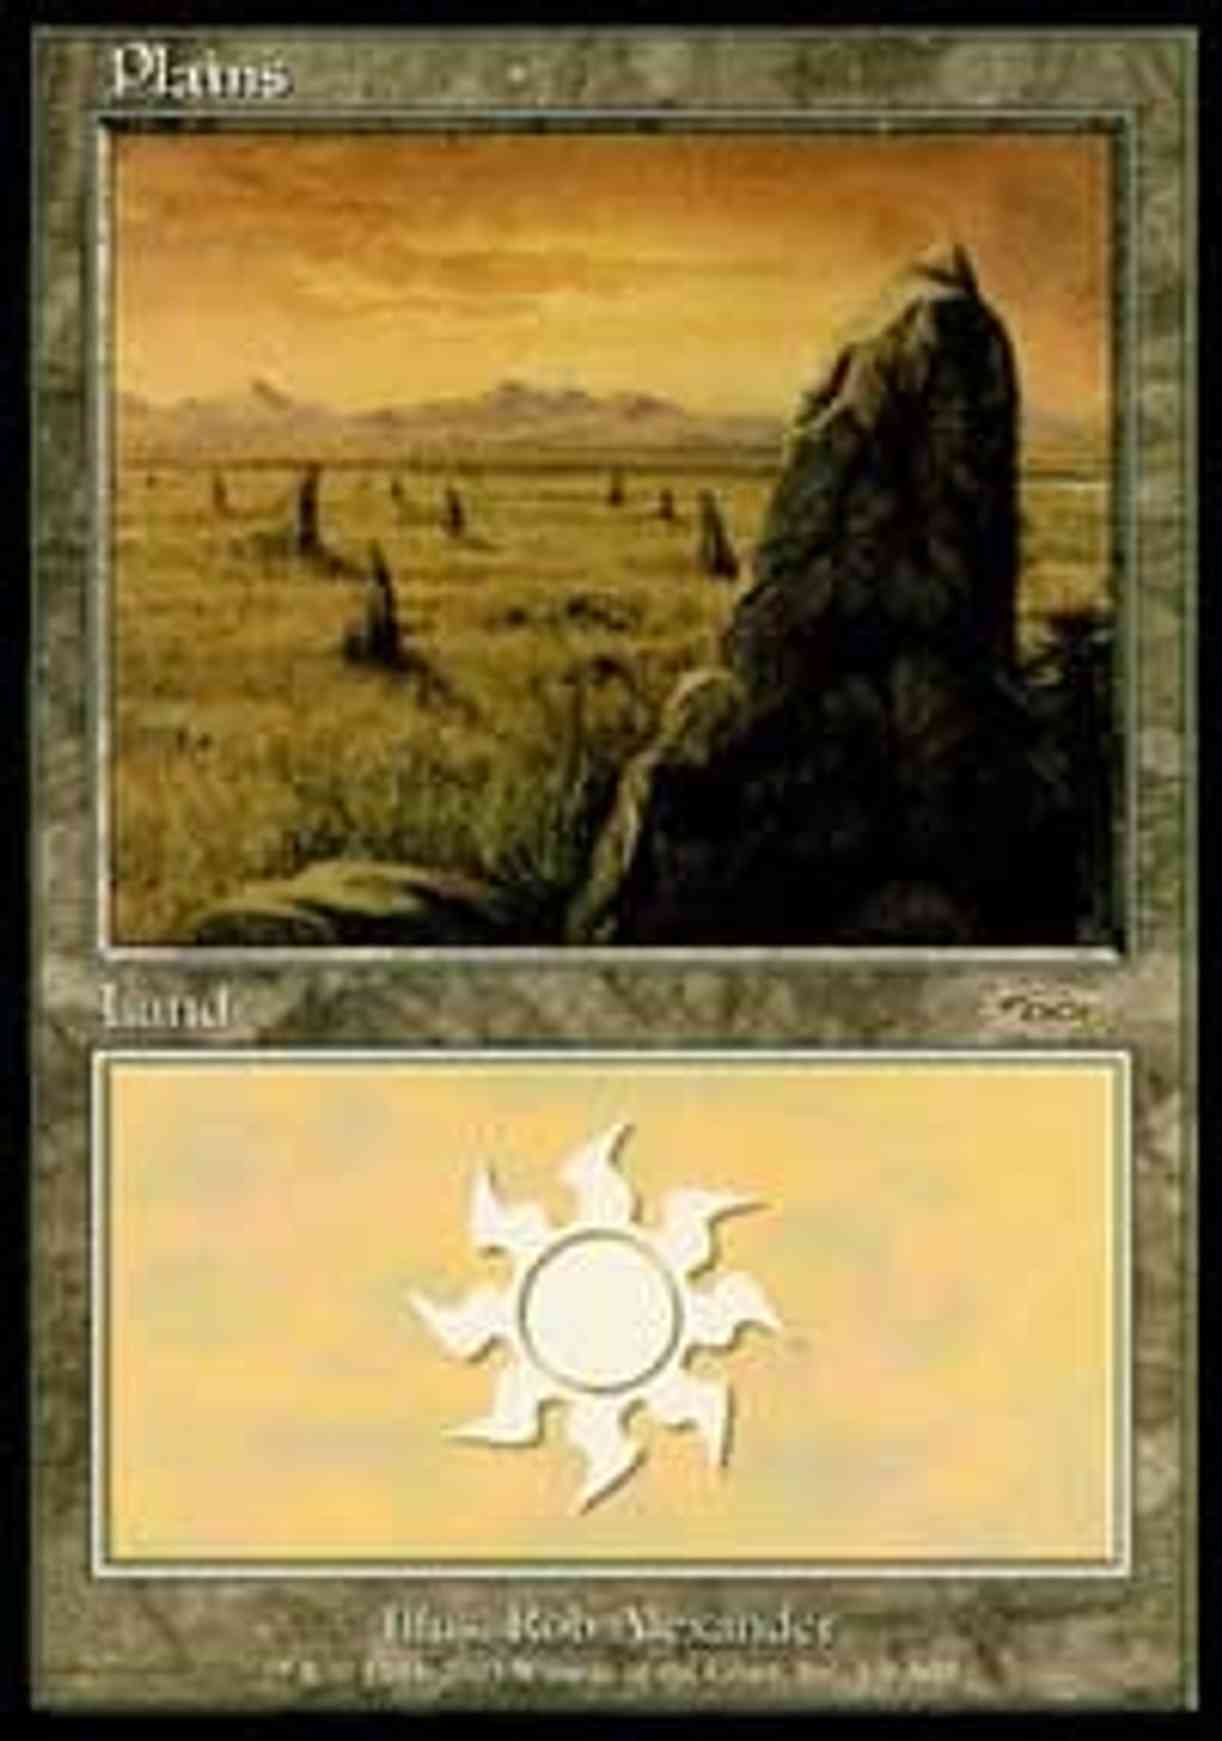 Plains (2003) magic card front